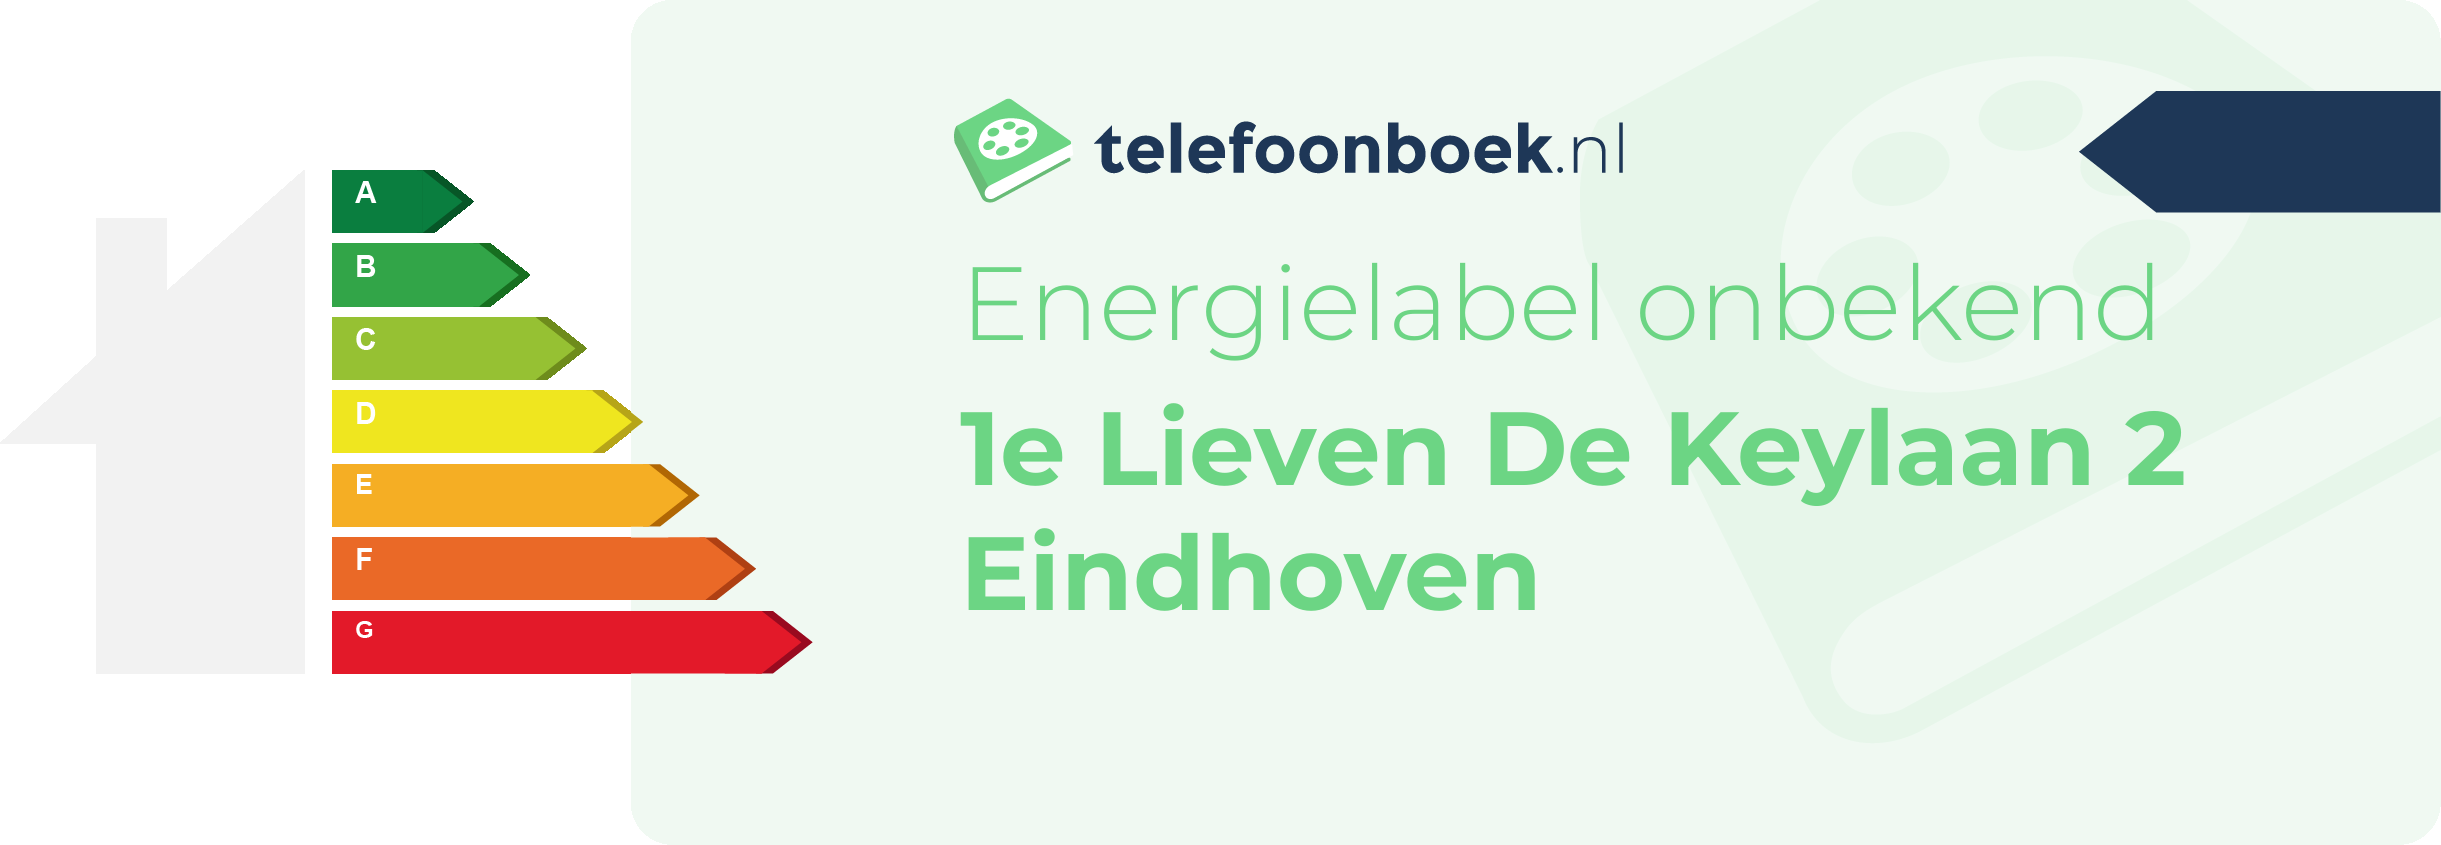 Energielabel 1e Lieven De Keylaan 2 Eindhoven